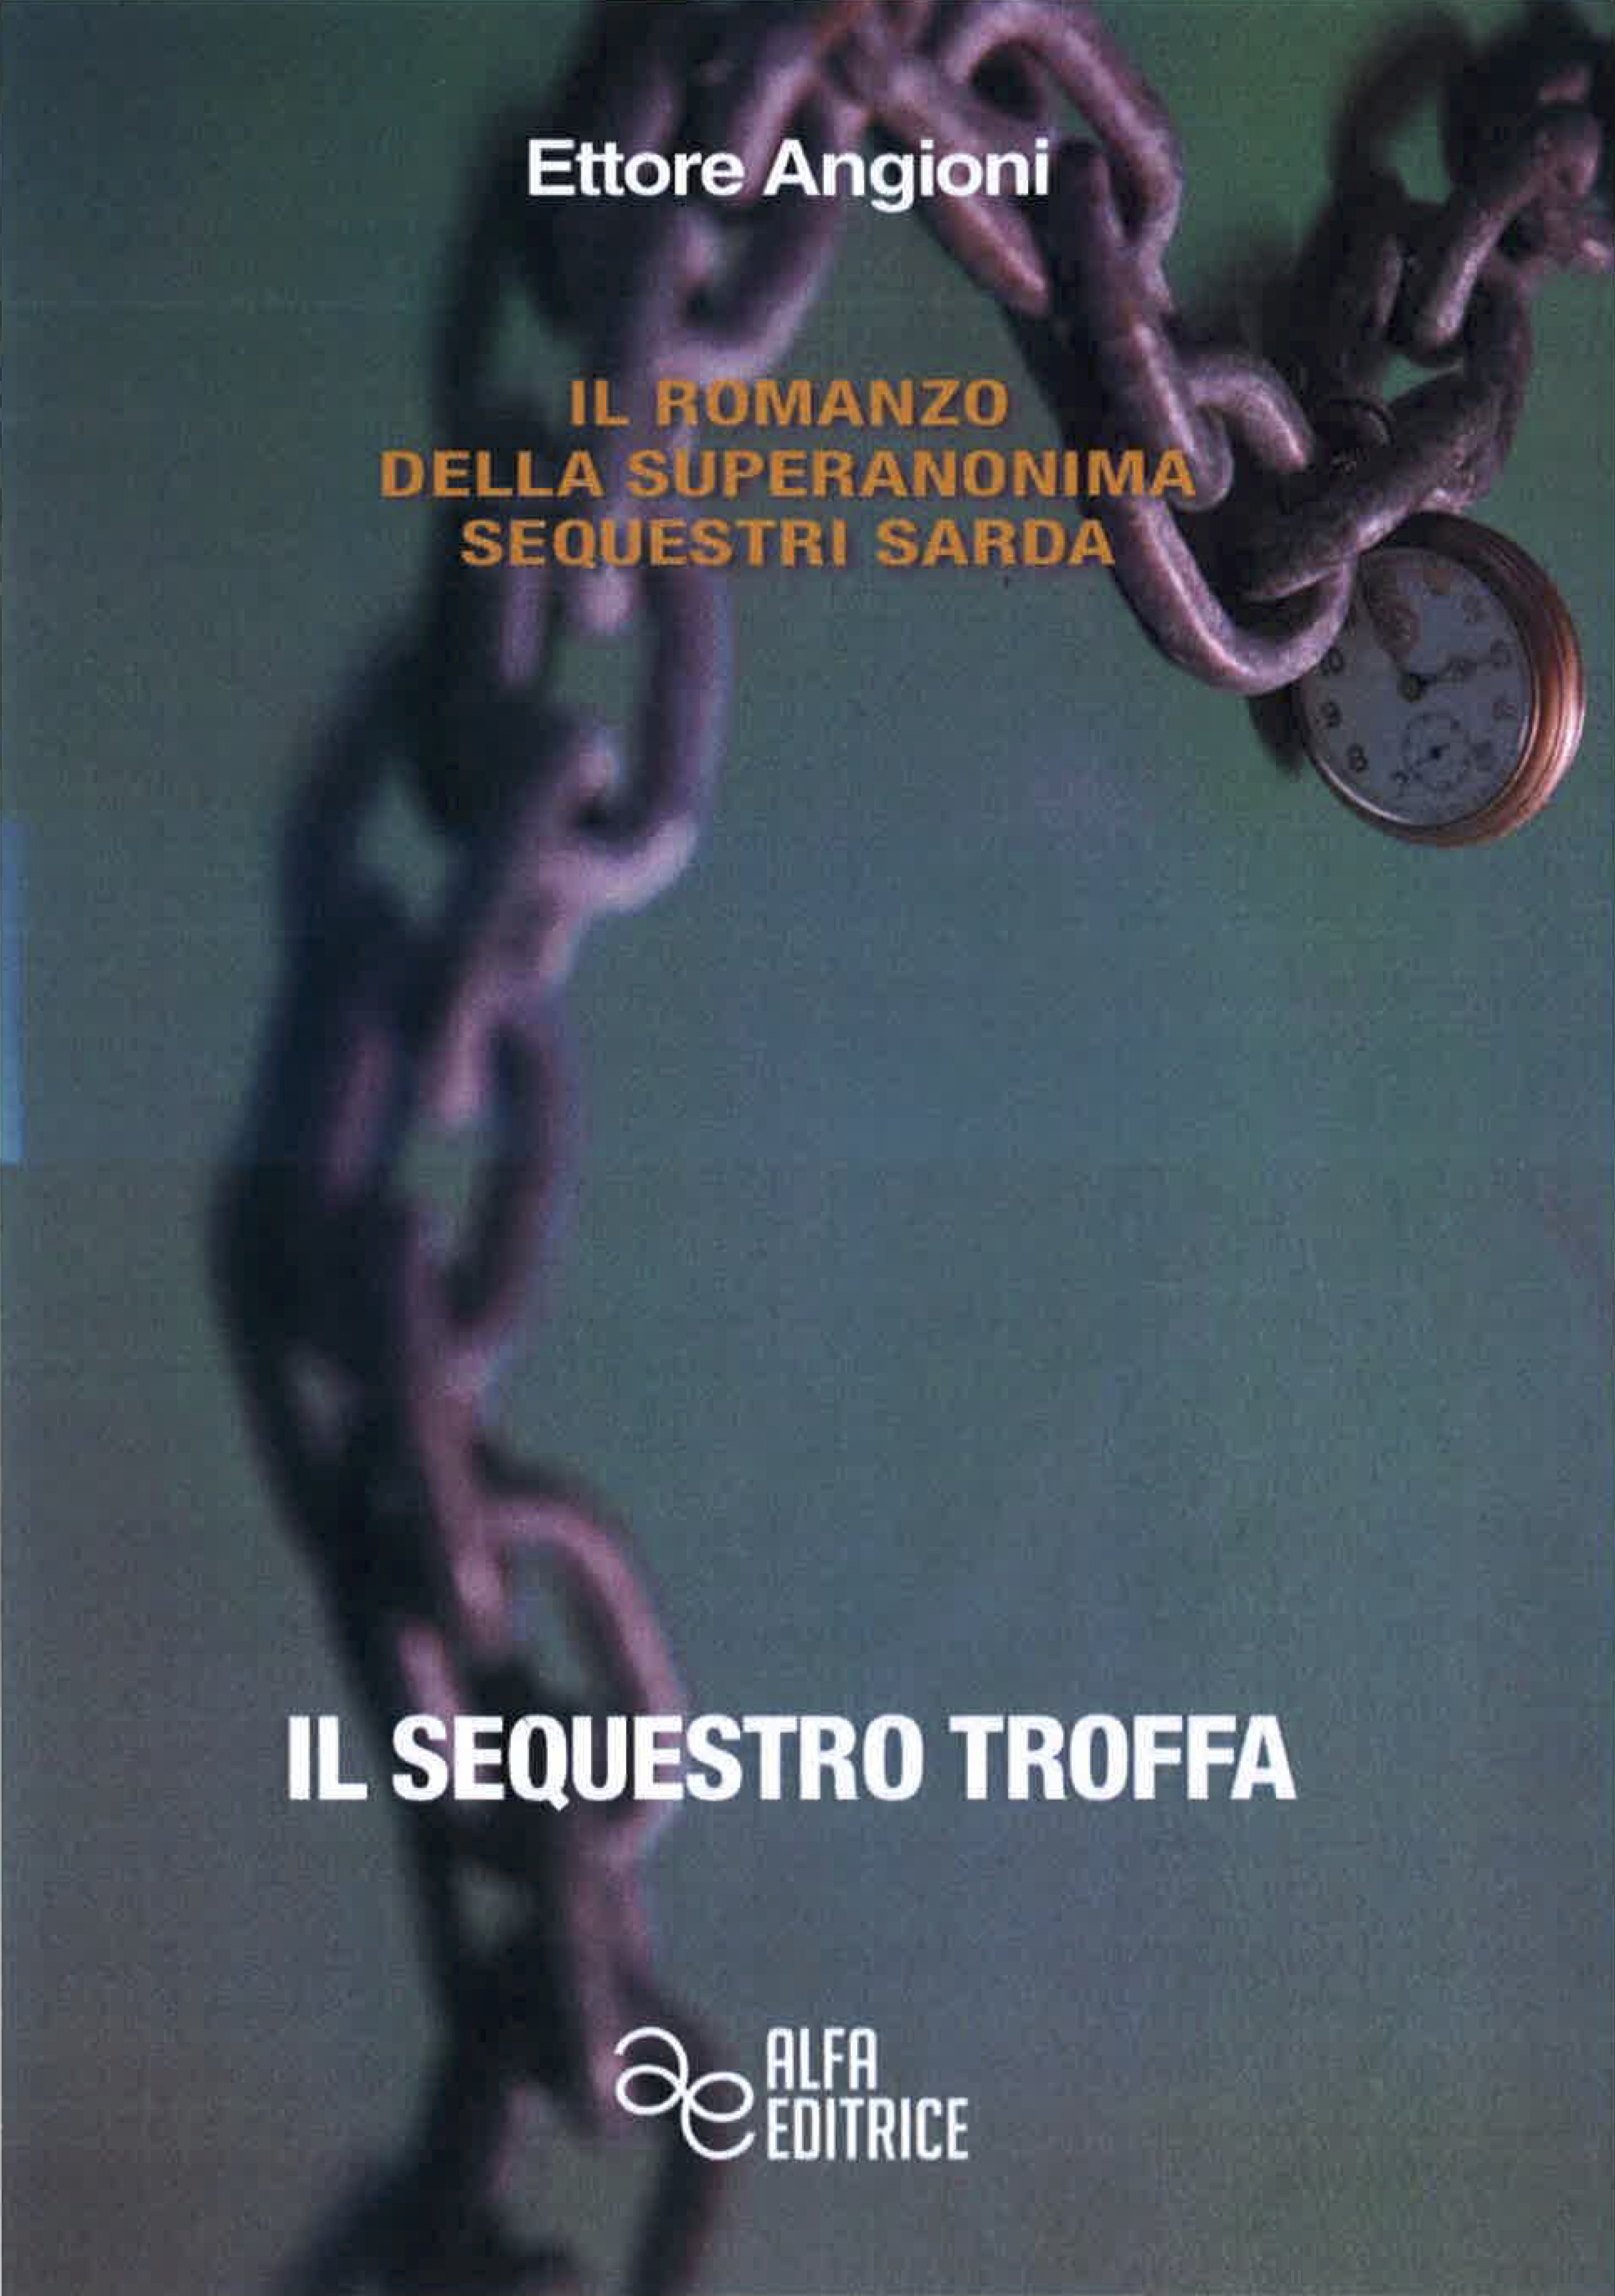 Presentazione del libro di Ettore Angioni 